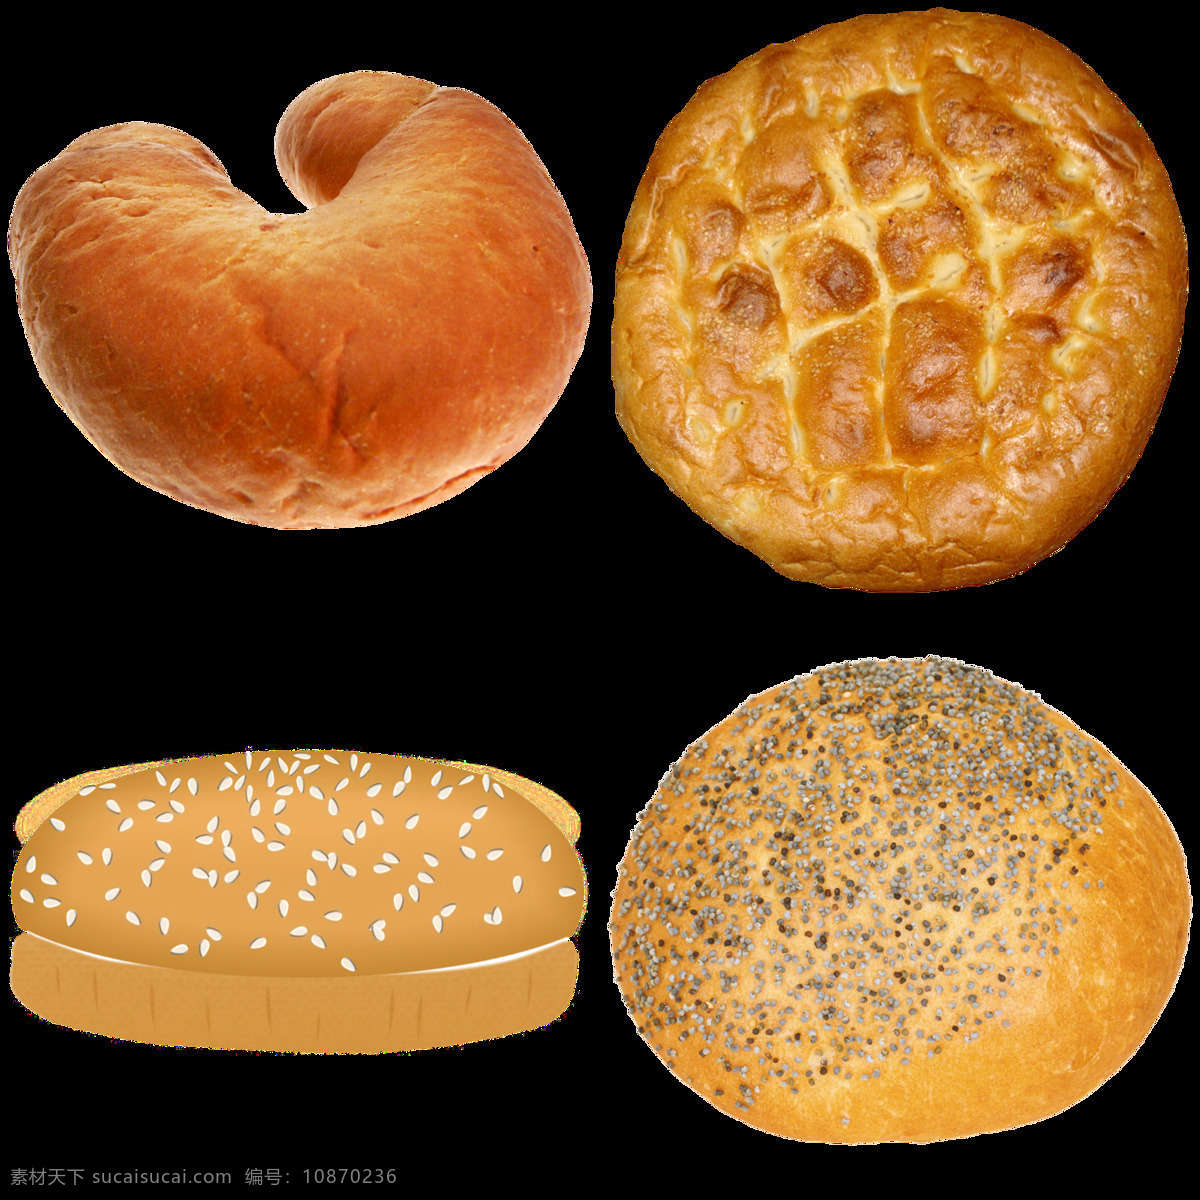 圆形 小 面包 免 抠 透明 图 层 法式小面包 豆沙面包 小天使面包 绿茶面包 小杨子面包 面包酥 乳酪面包 圆形小面包 蜂蜜小面包 奶黄小面包 花样小面包 法式 蜂蜜